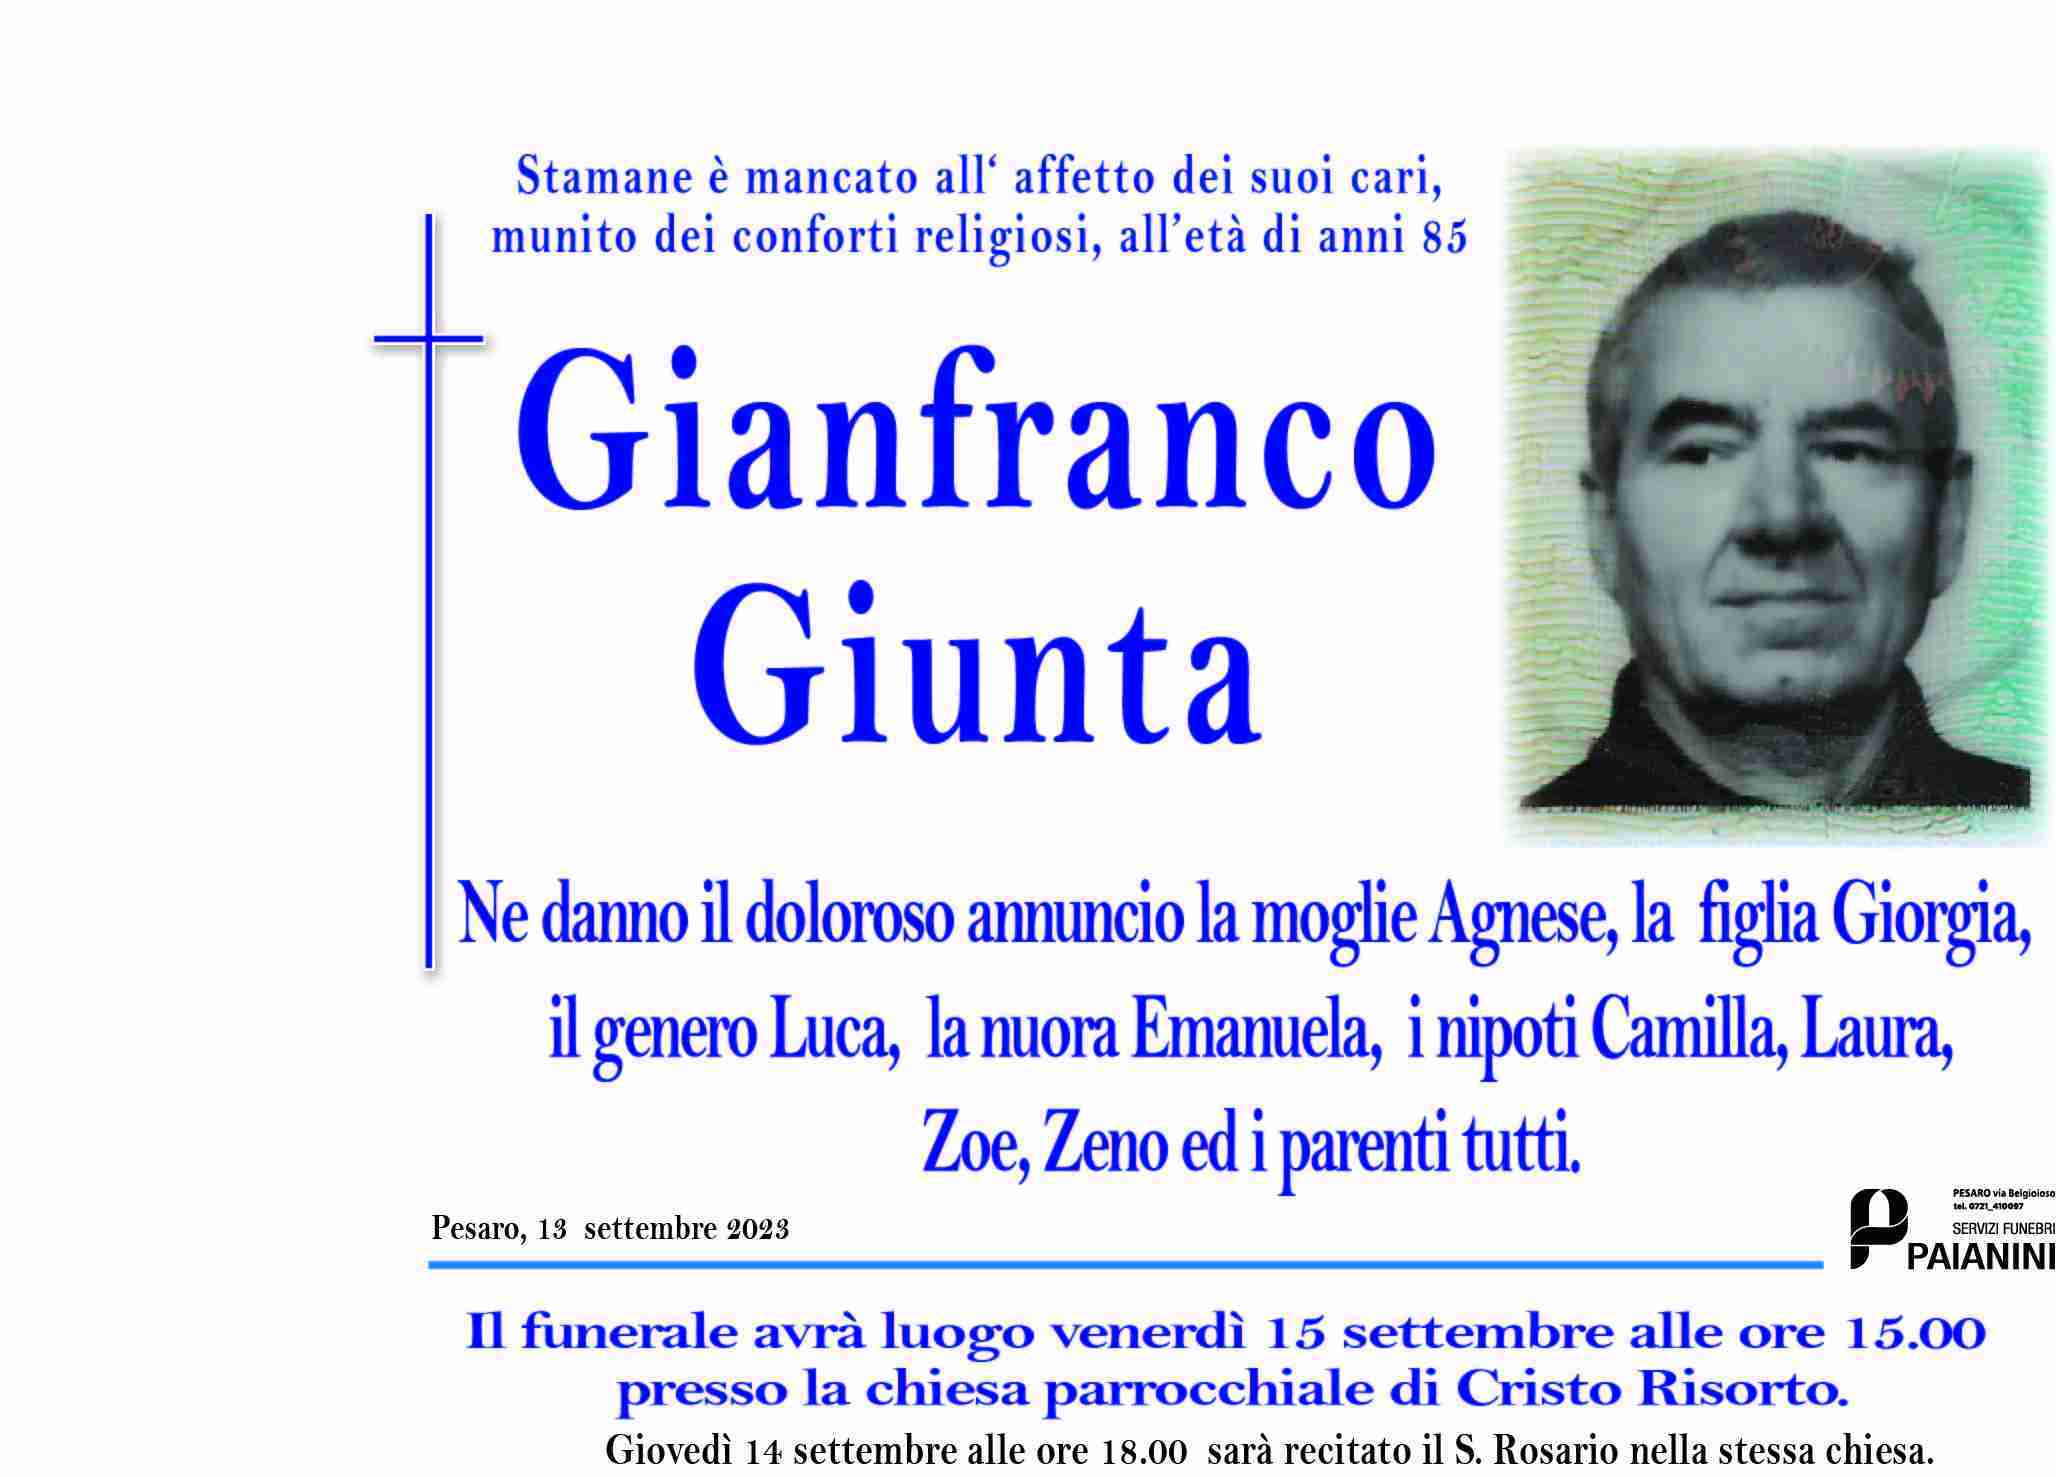 Gianfranco Giunta